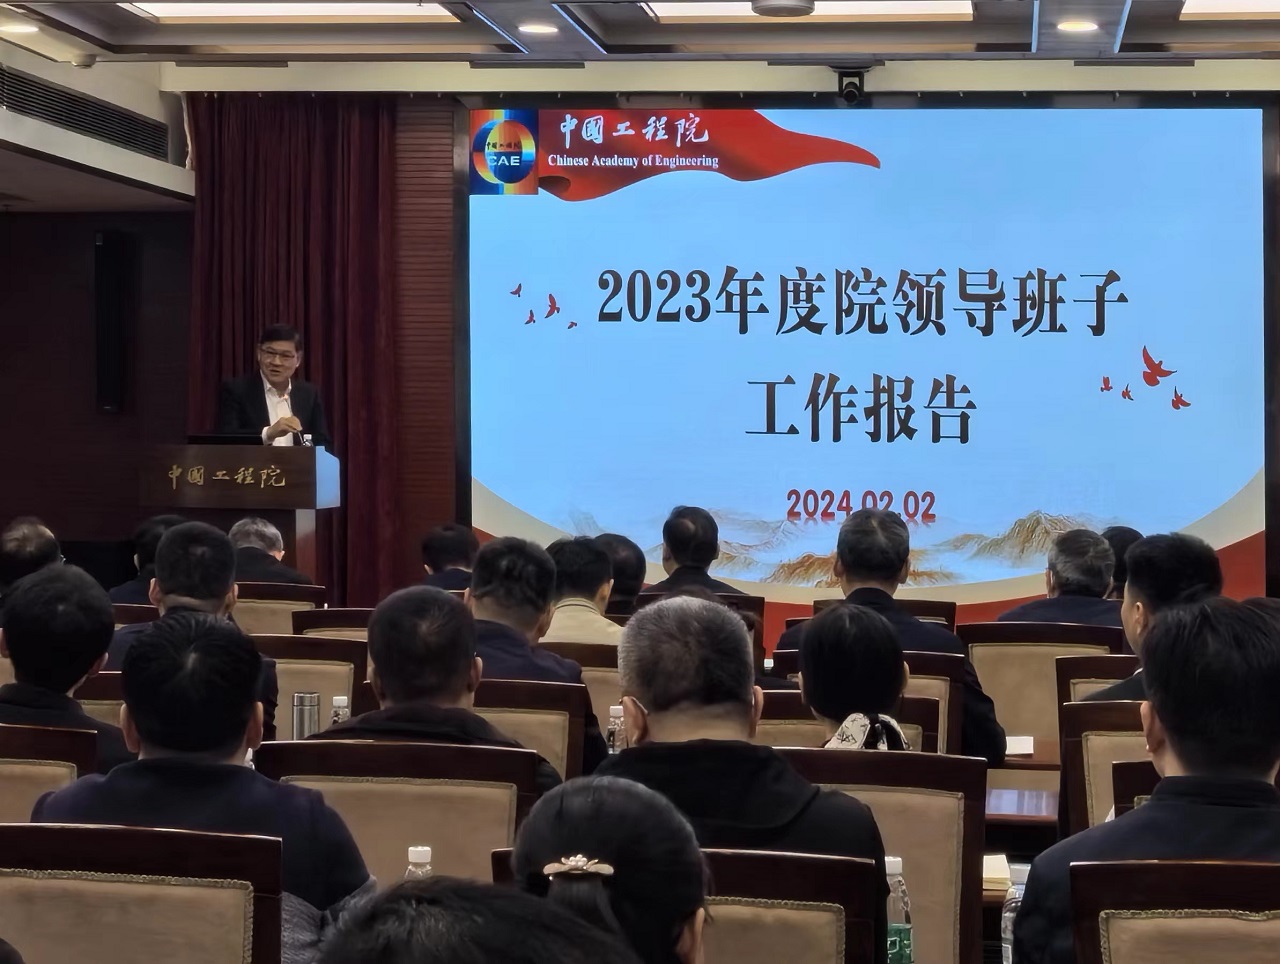 中国工程院召开2023年度院领导班子考核暨干部选拔任用工作“一报告两评议”会议